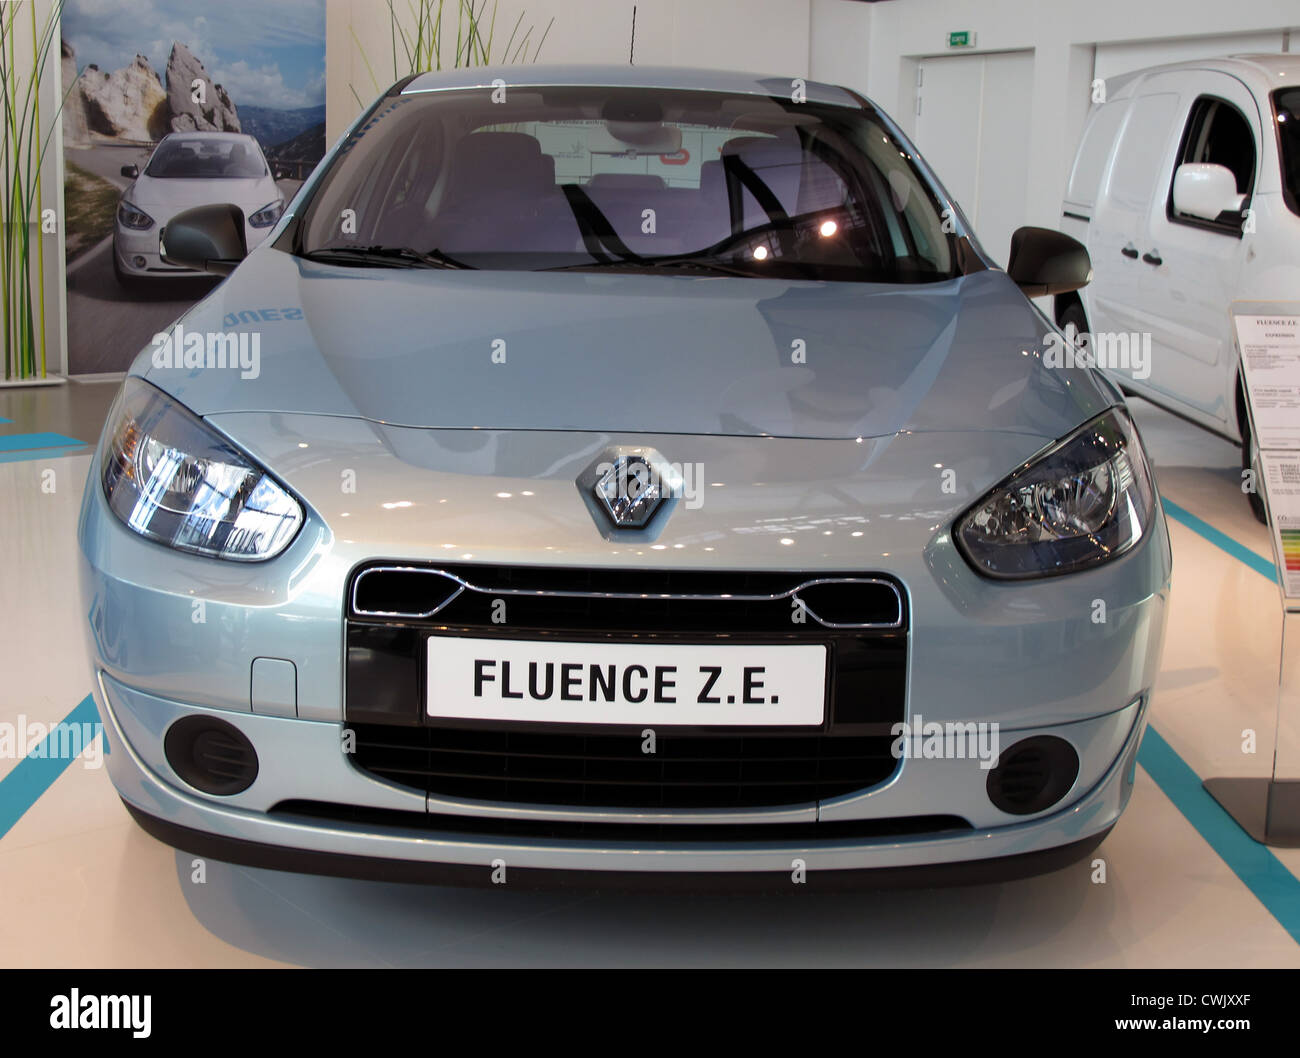 Renault,Fluence ZE,Electric car,Zero emission,Show room at Boulogne-Billancourt near Paris,France Stock Photo